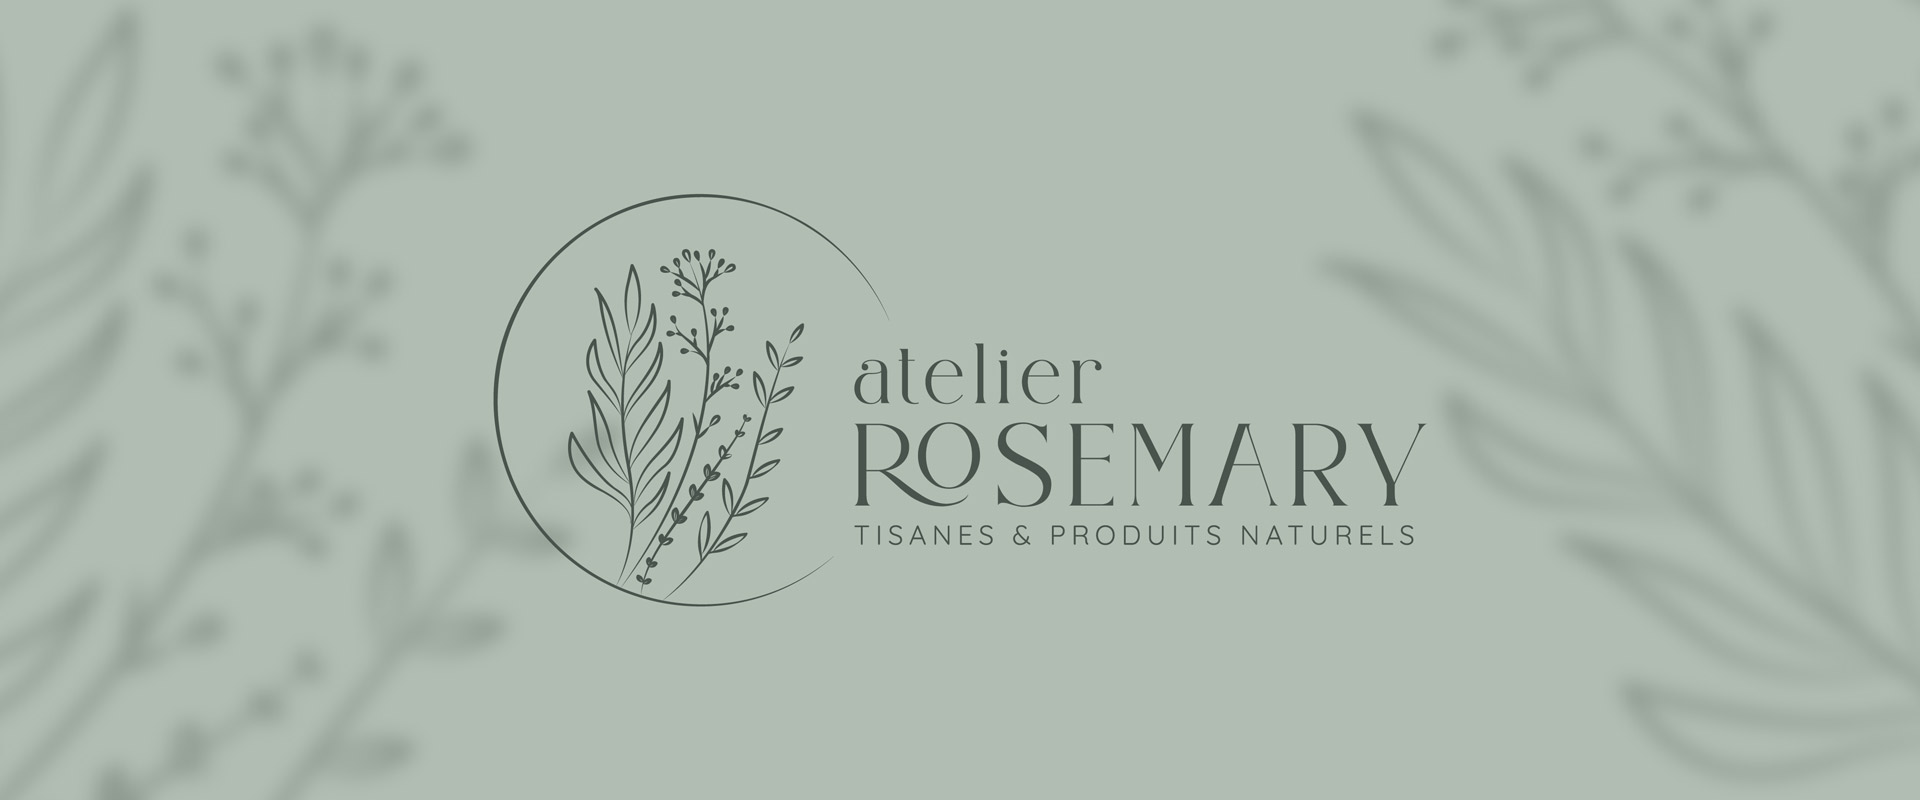 rosemary logo identite visuelle site internet agence owmel saint gilles croix de vie vendee 5